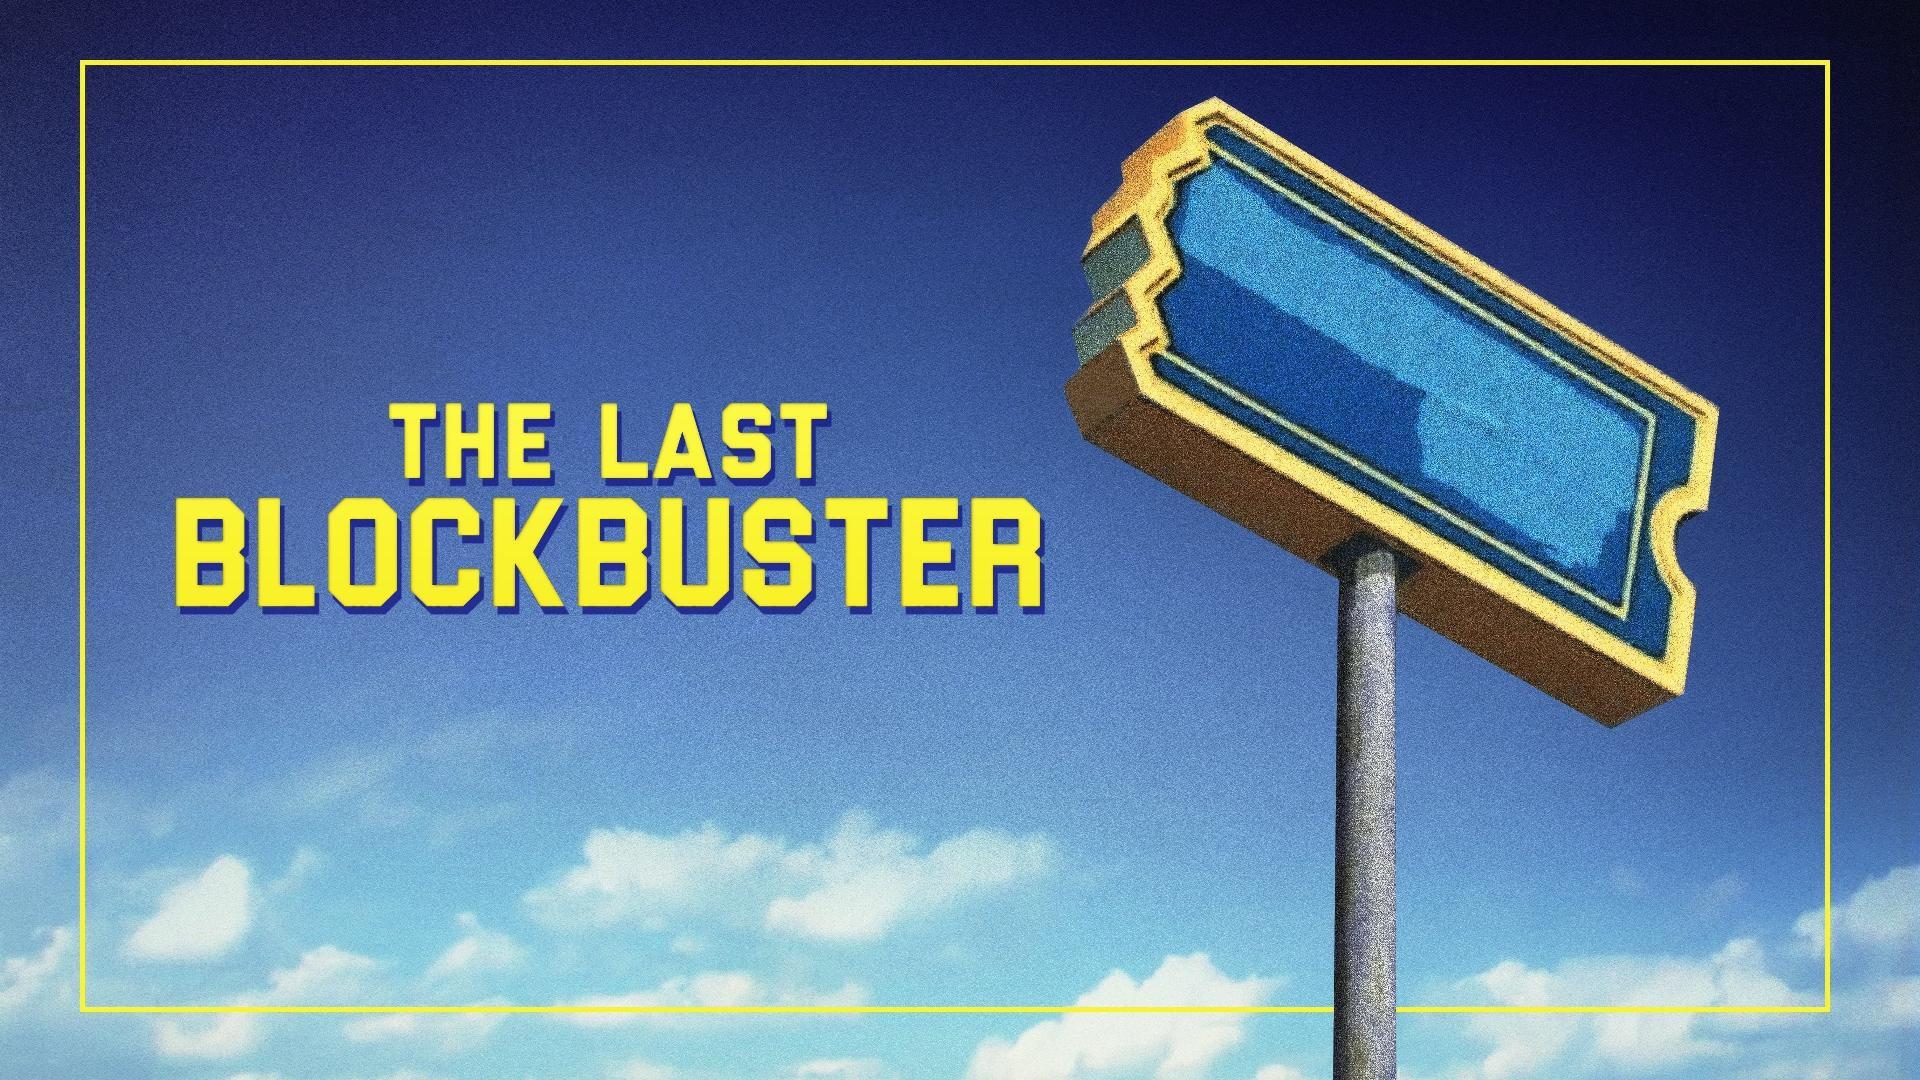 ბოლო ბლოკბასტერი / The Last Blockbuster